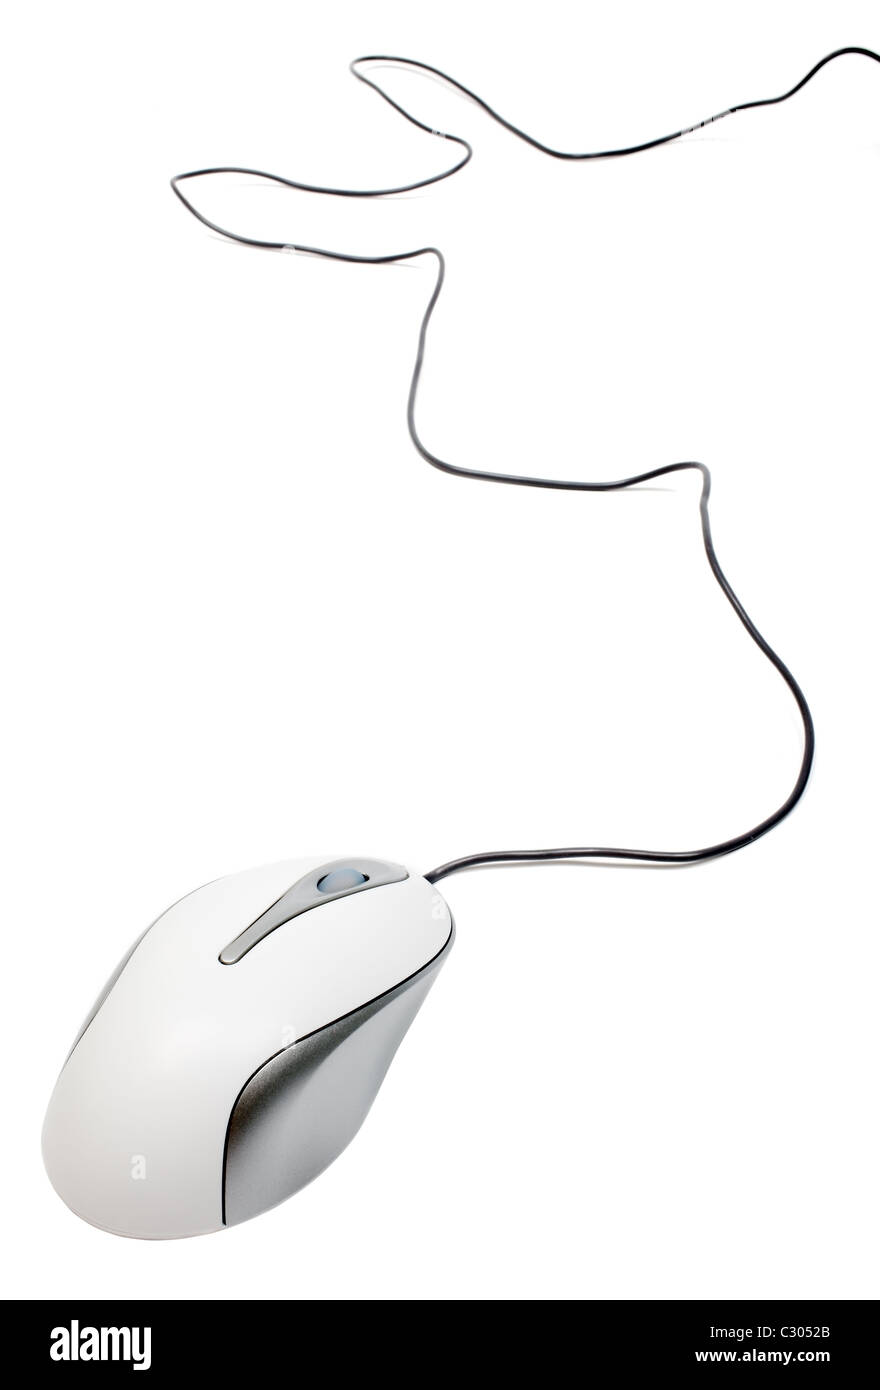 Matériel de souris d'ordinateur avec connexion câblée isolée sur fond blanc. Matériel périphérique optique, molette de défilement, boutons de clic. Banque D'Images